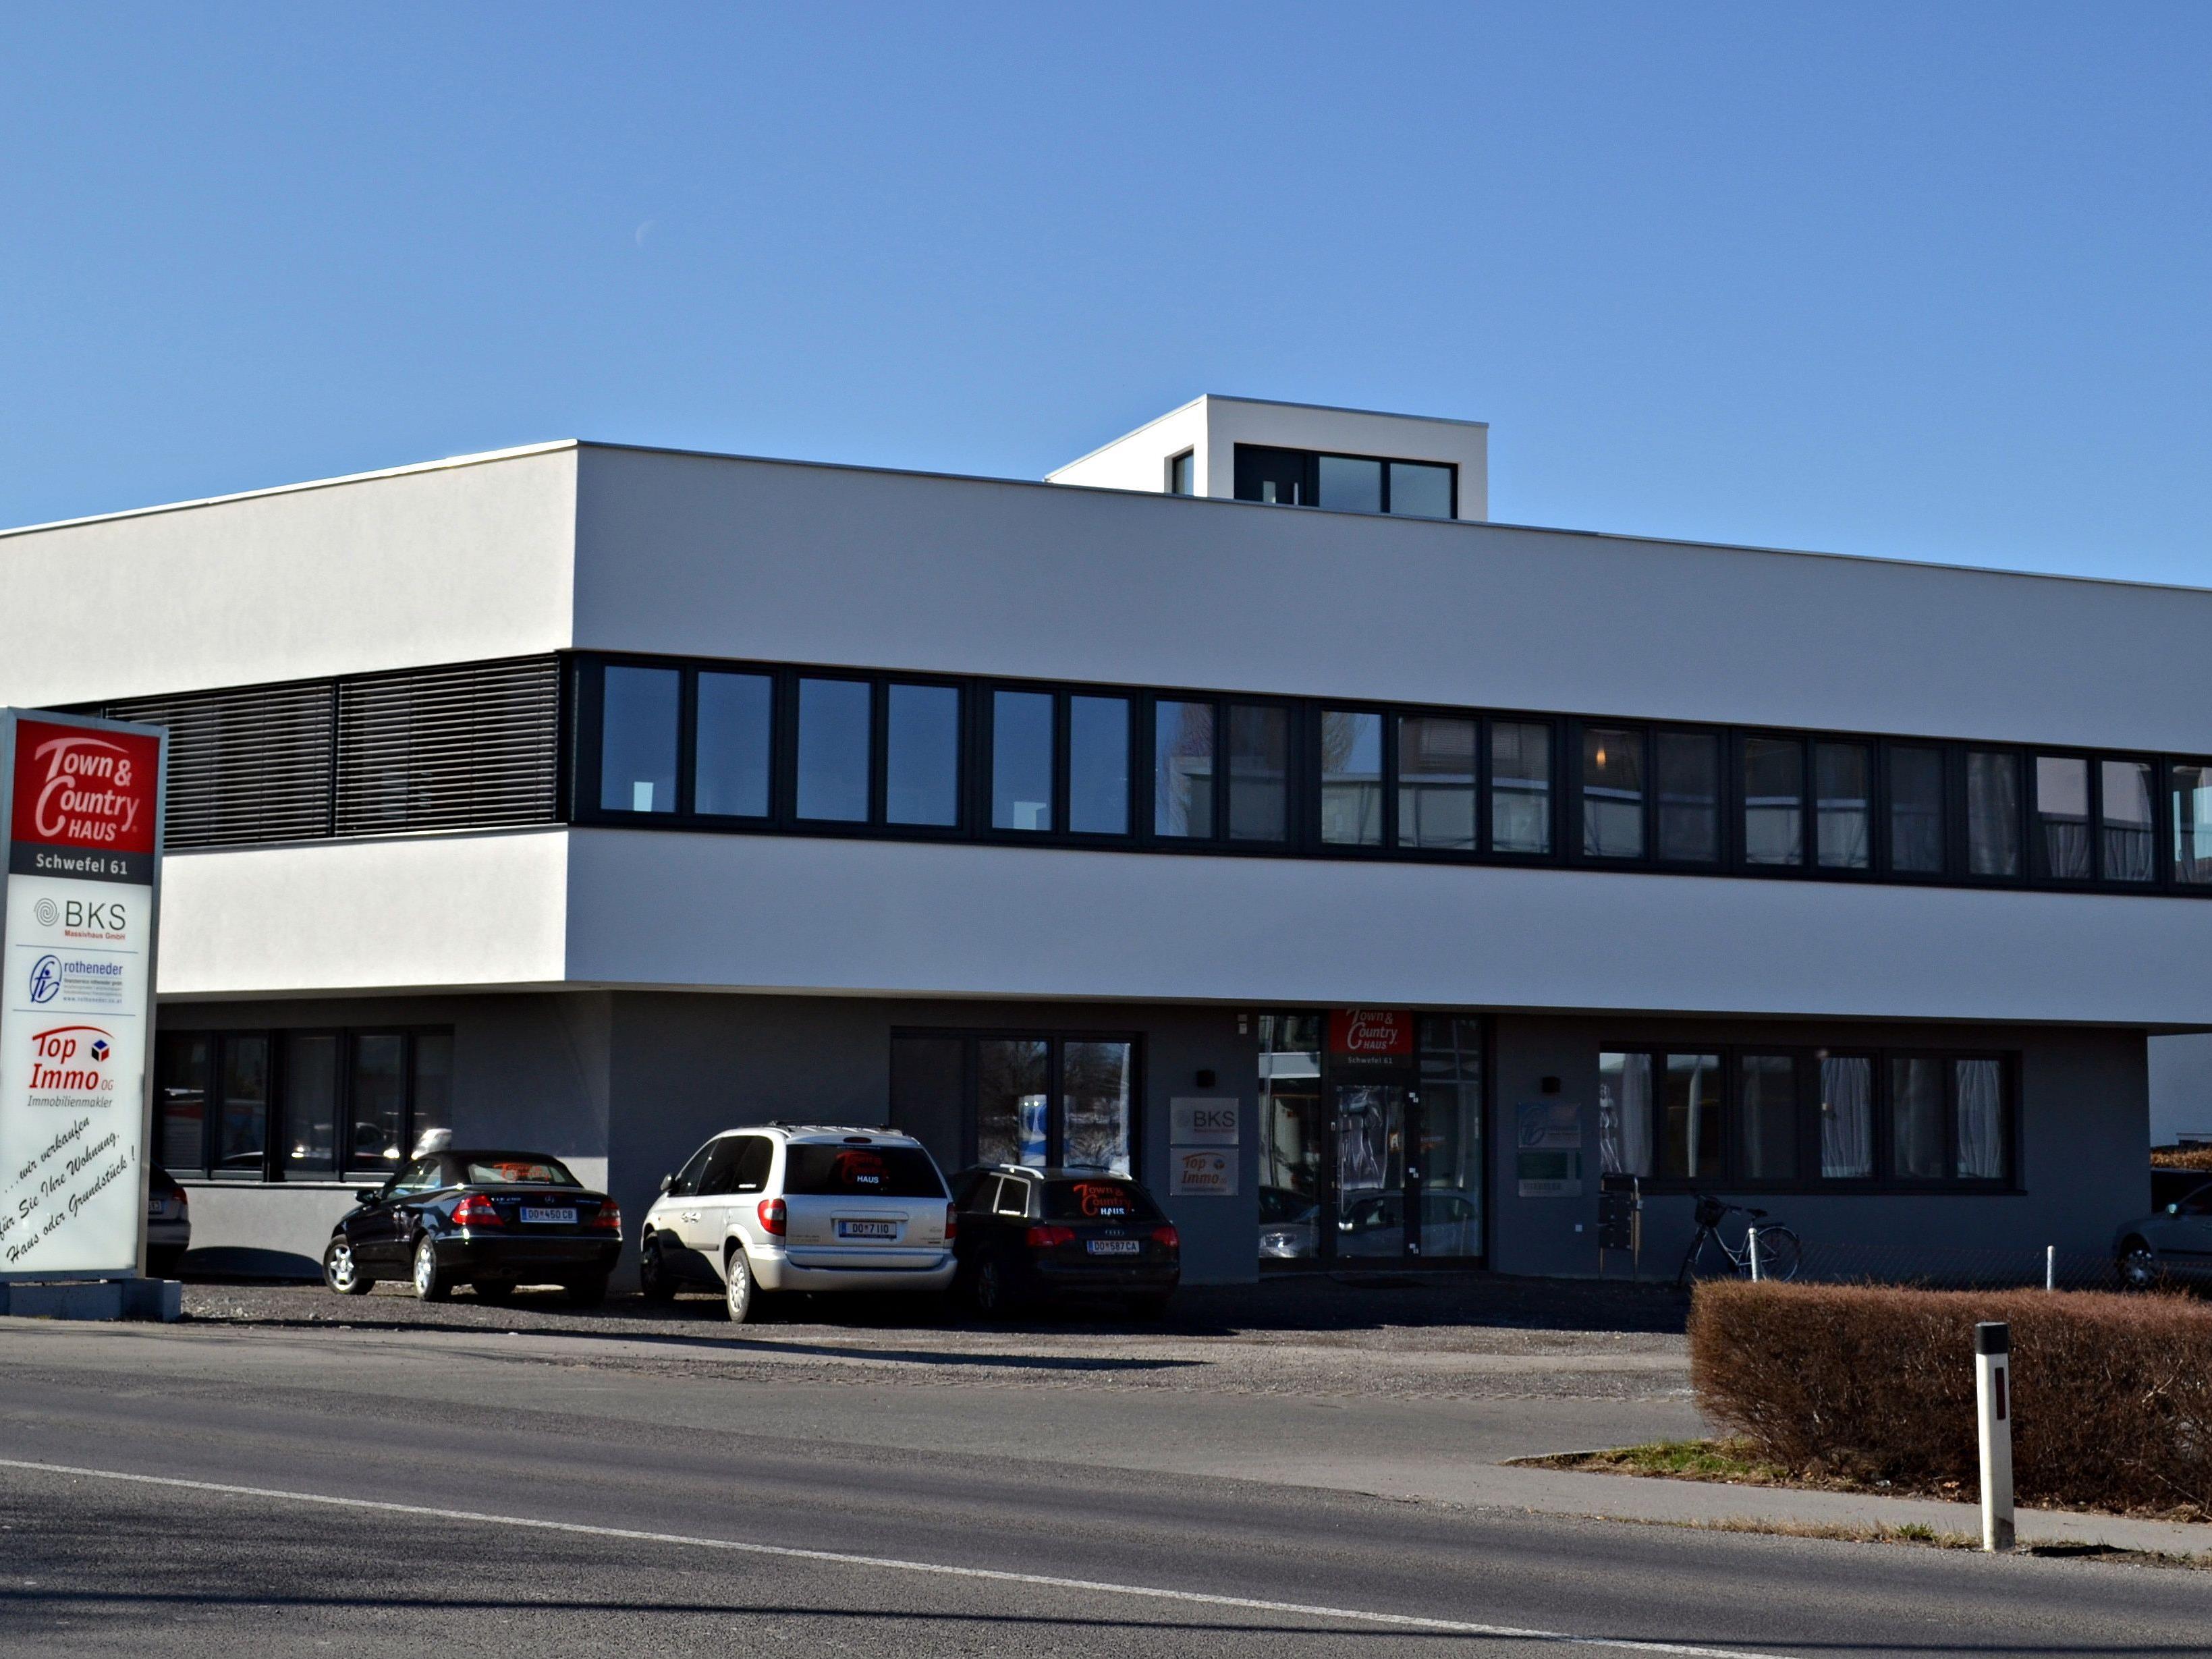 Die BKS Massivhaus GmbH, Partner der Town & Country Haus GmbH für Vorarlberg, überzeugt als unschlagbares Duo